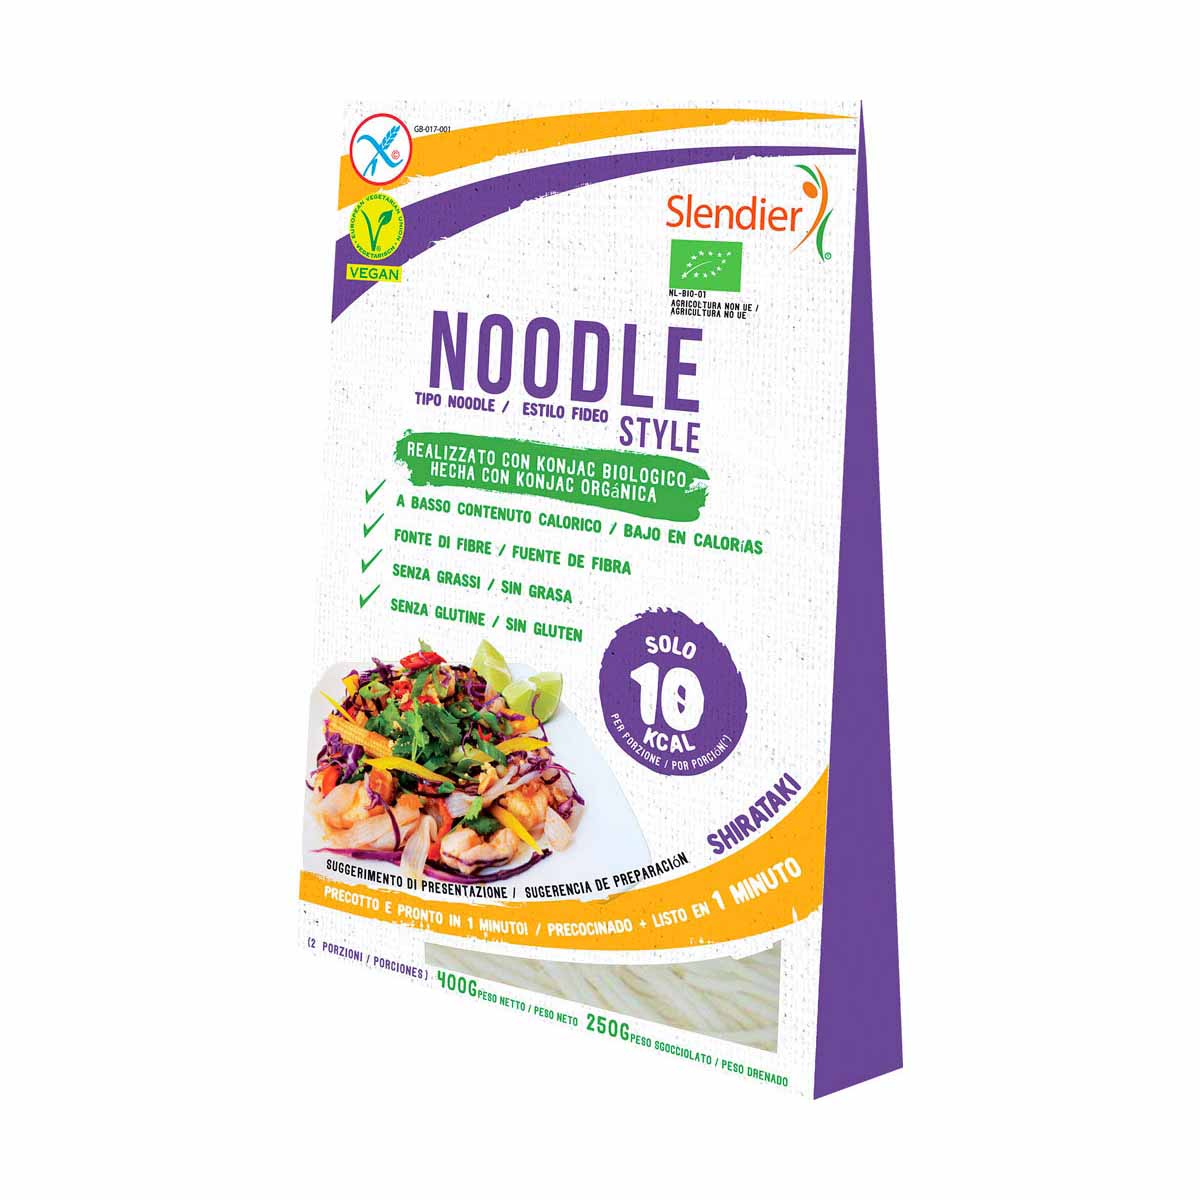 Slendier Noodles style